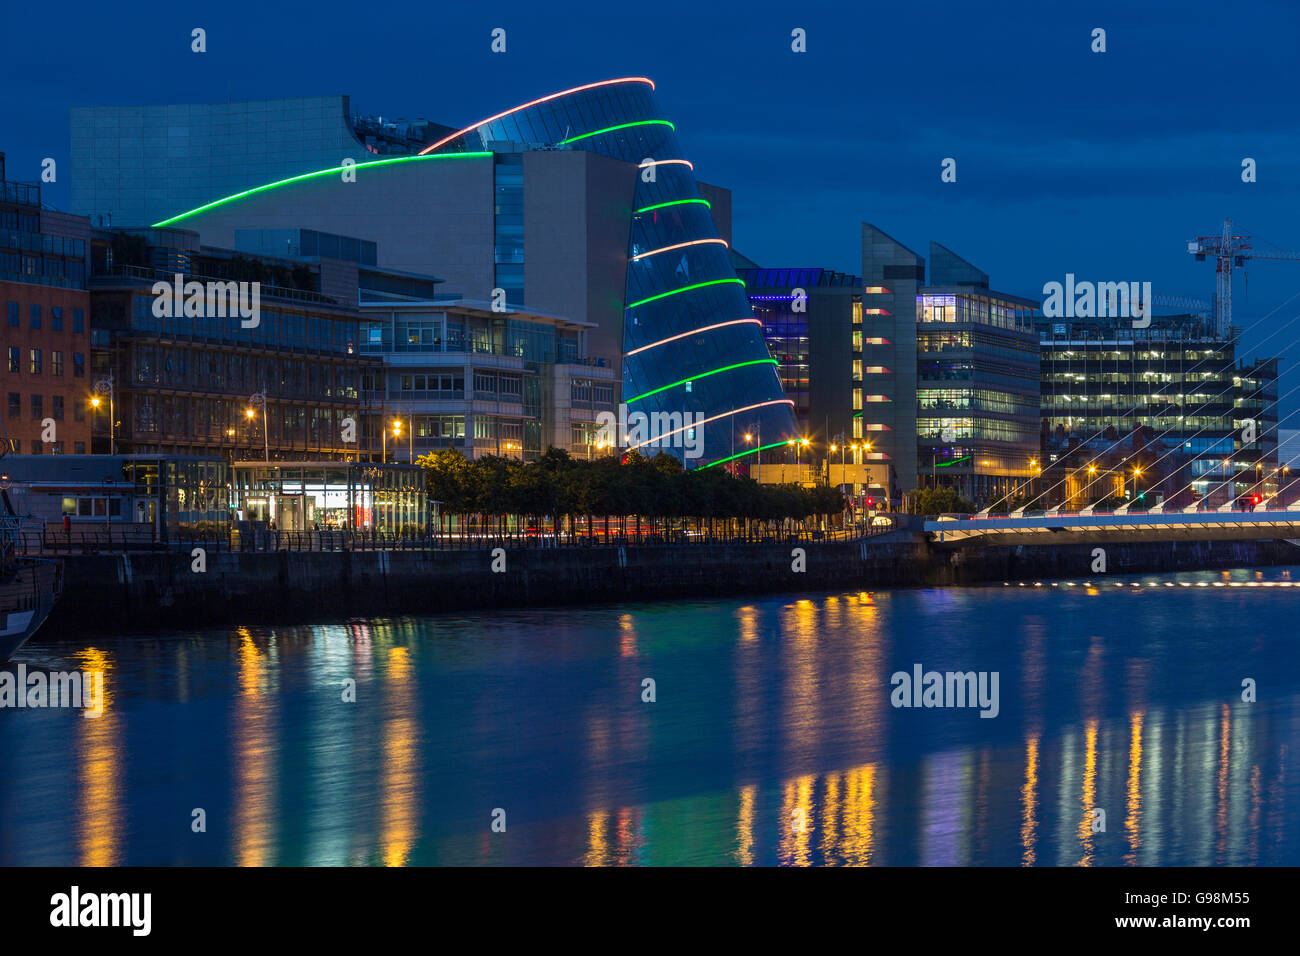 Il fiume Liffey, il Samuel Beckett Bridge e il Centro Congressi - Dublino - Irlanda Foto Stock